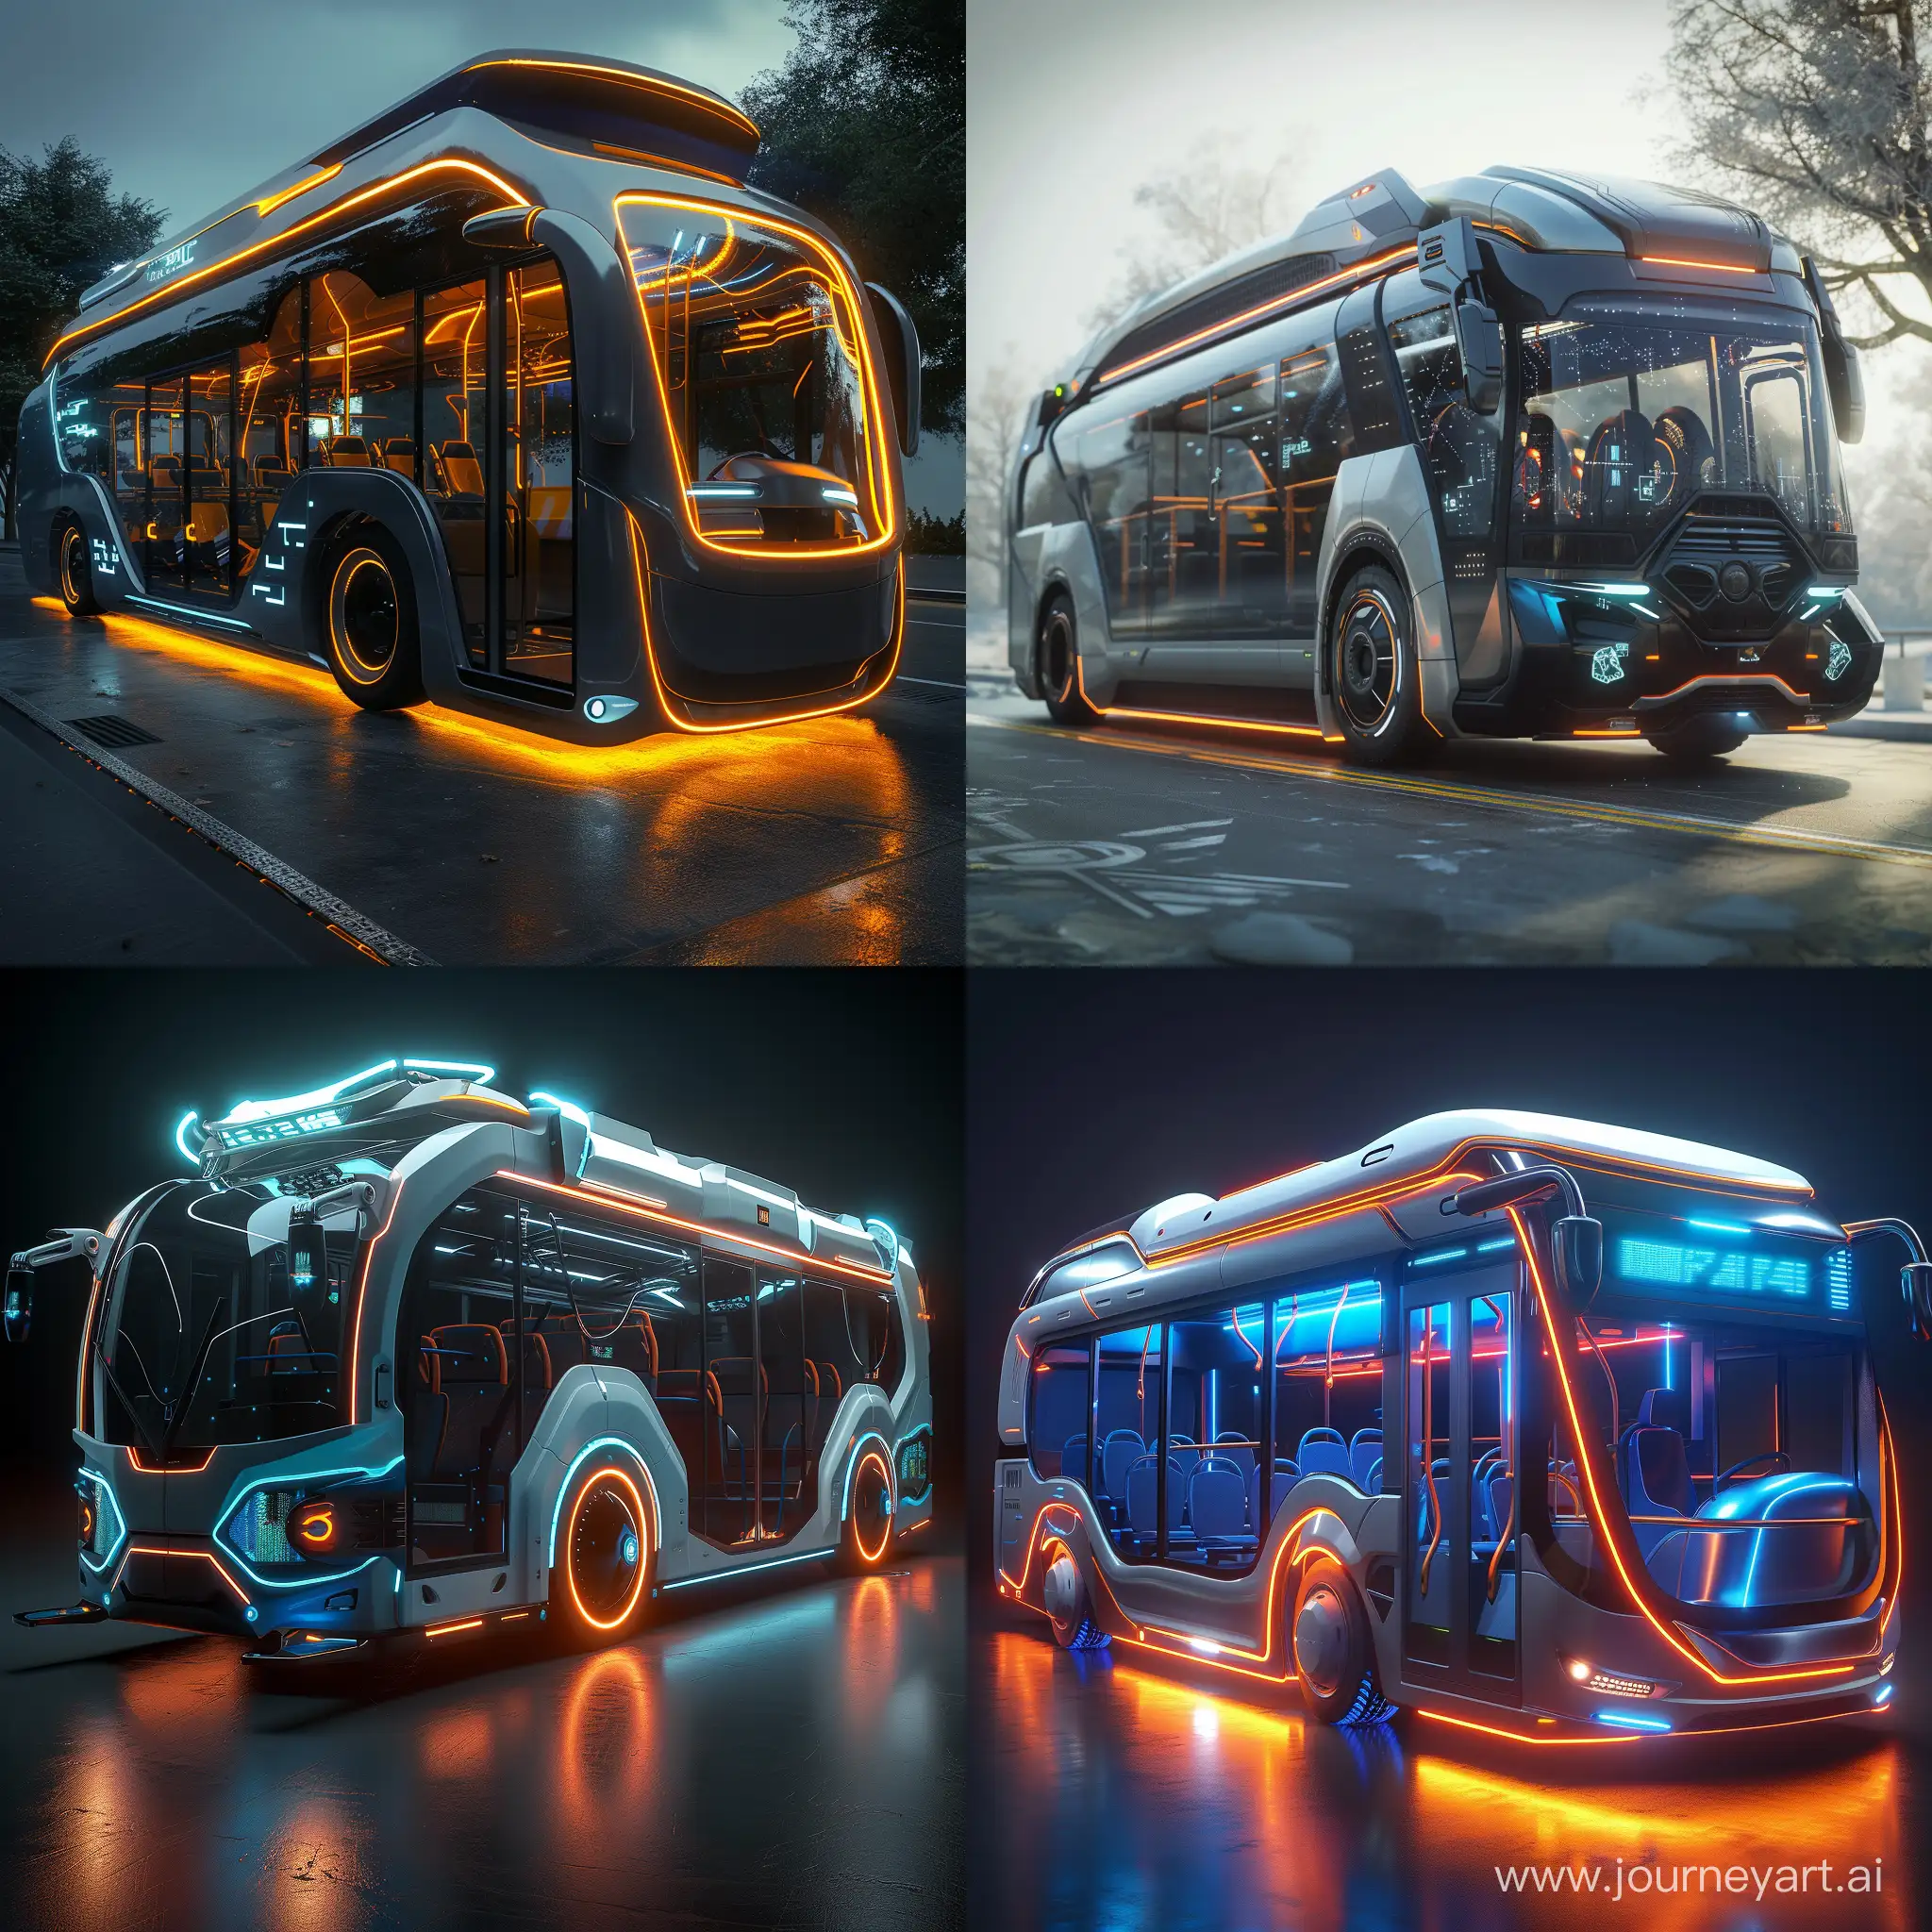 Futuristic bus, world of high tech, octane render